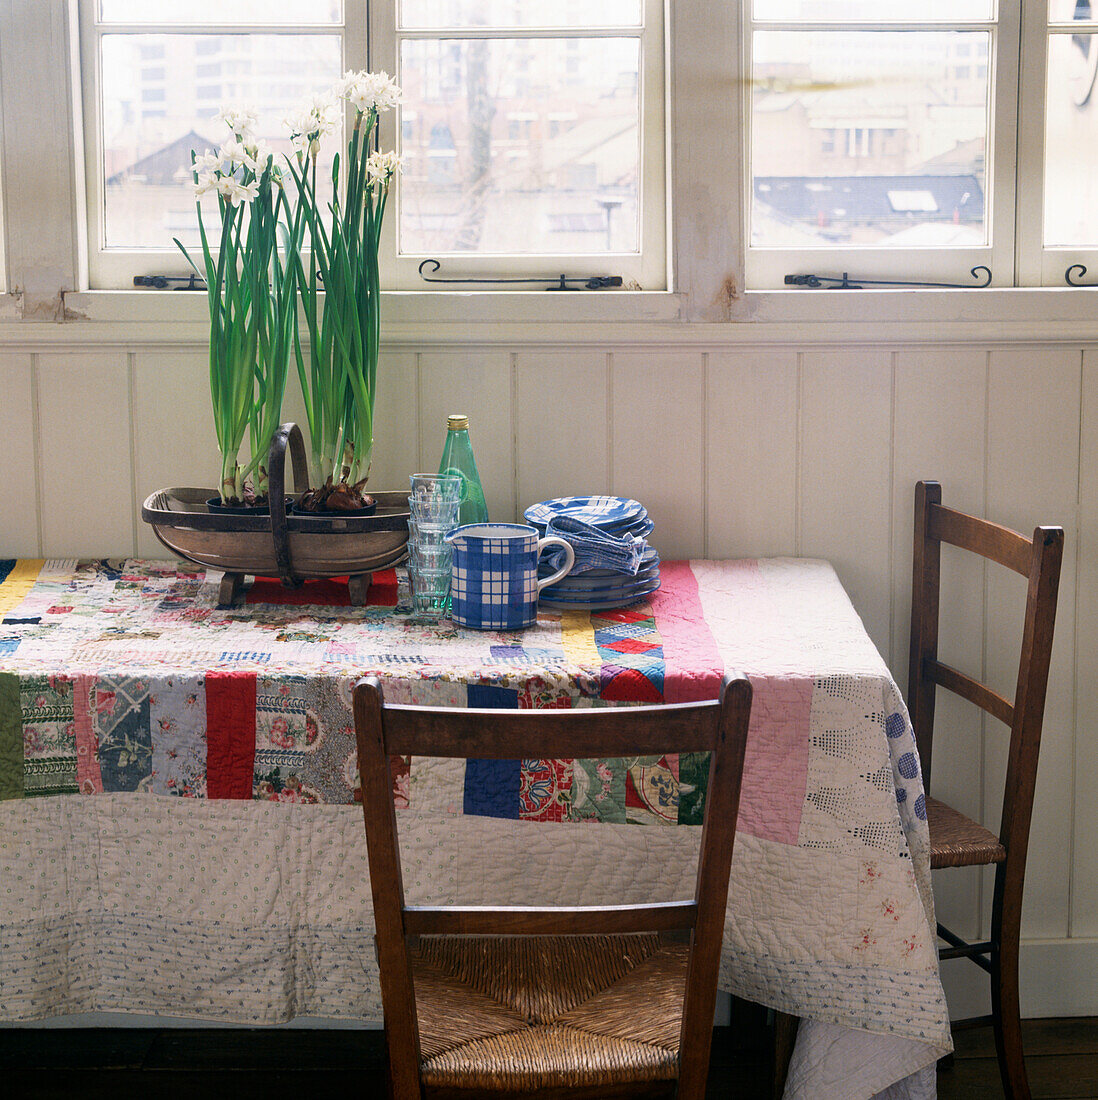 Küchentisch in einem getäfelten Raum mit Narzissen auf einer farbenfrohen Patchwork-Tischdecke